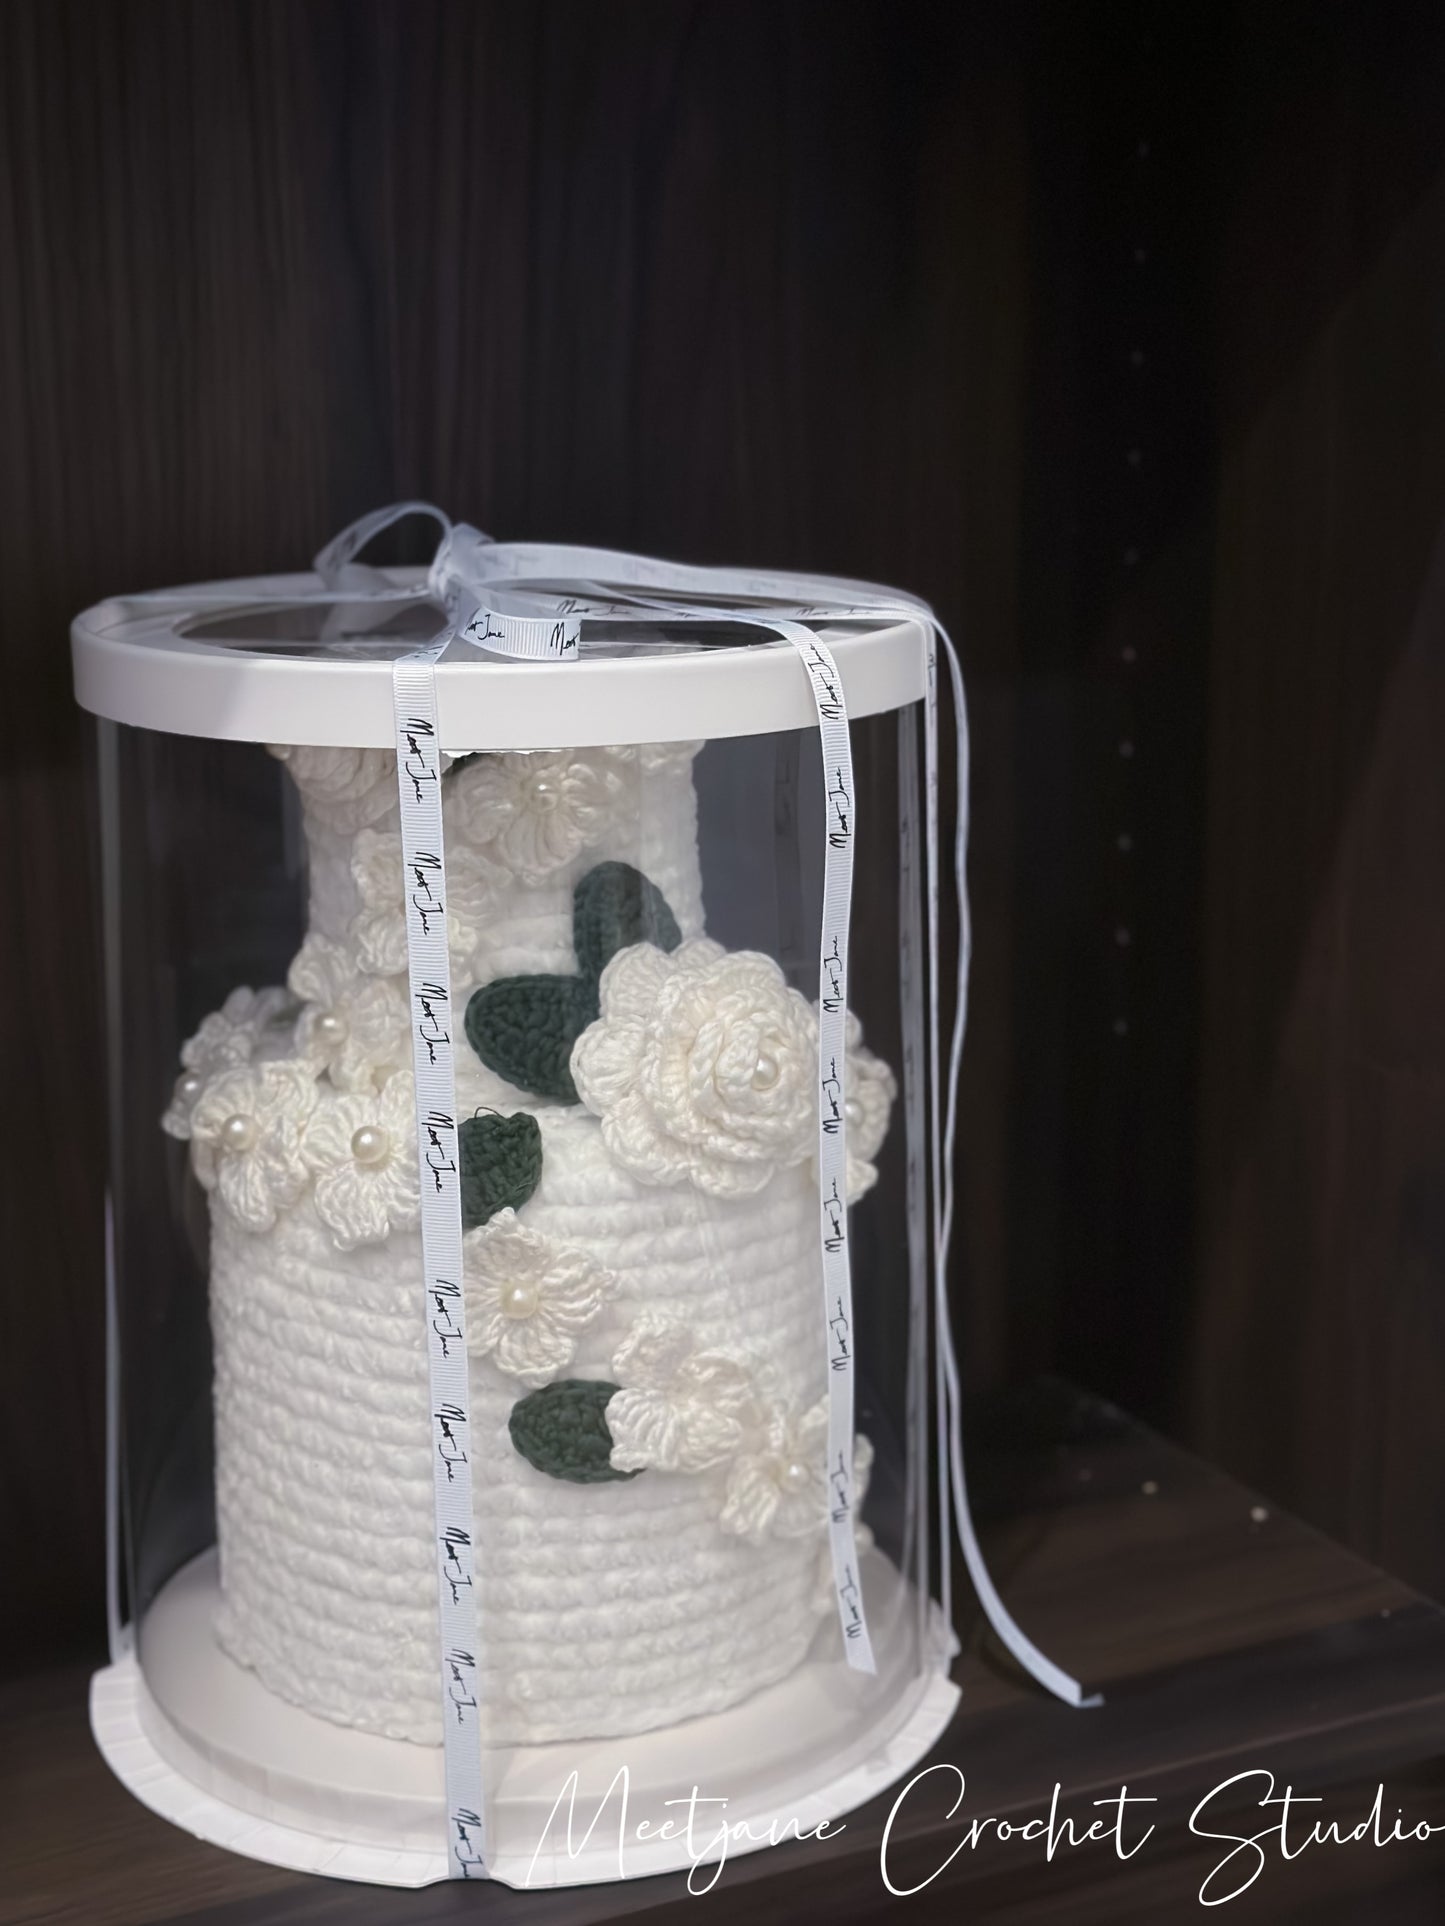 Crochet Wedding|Crochet double barrel Wedding cake